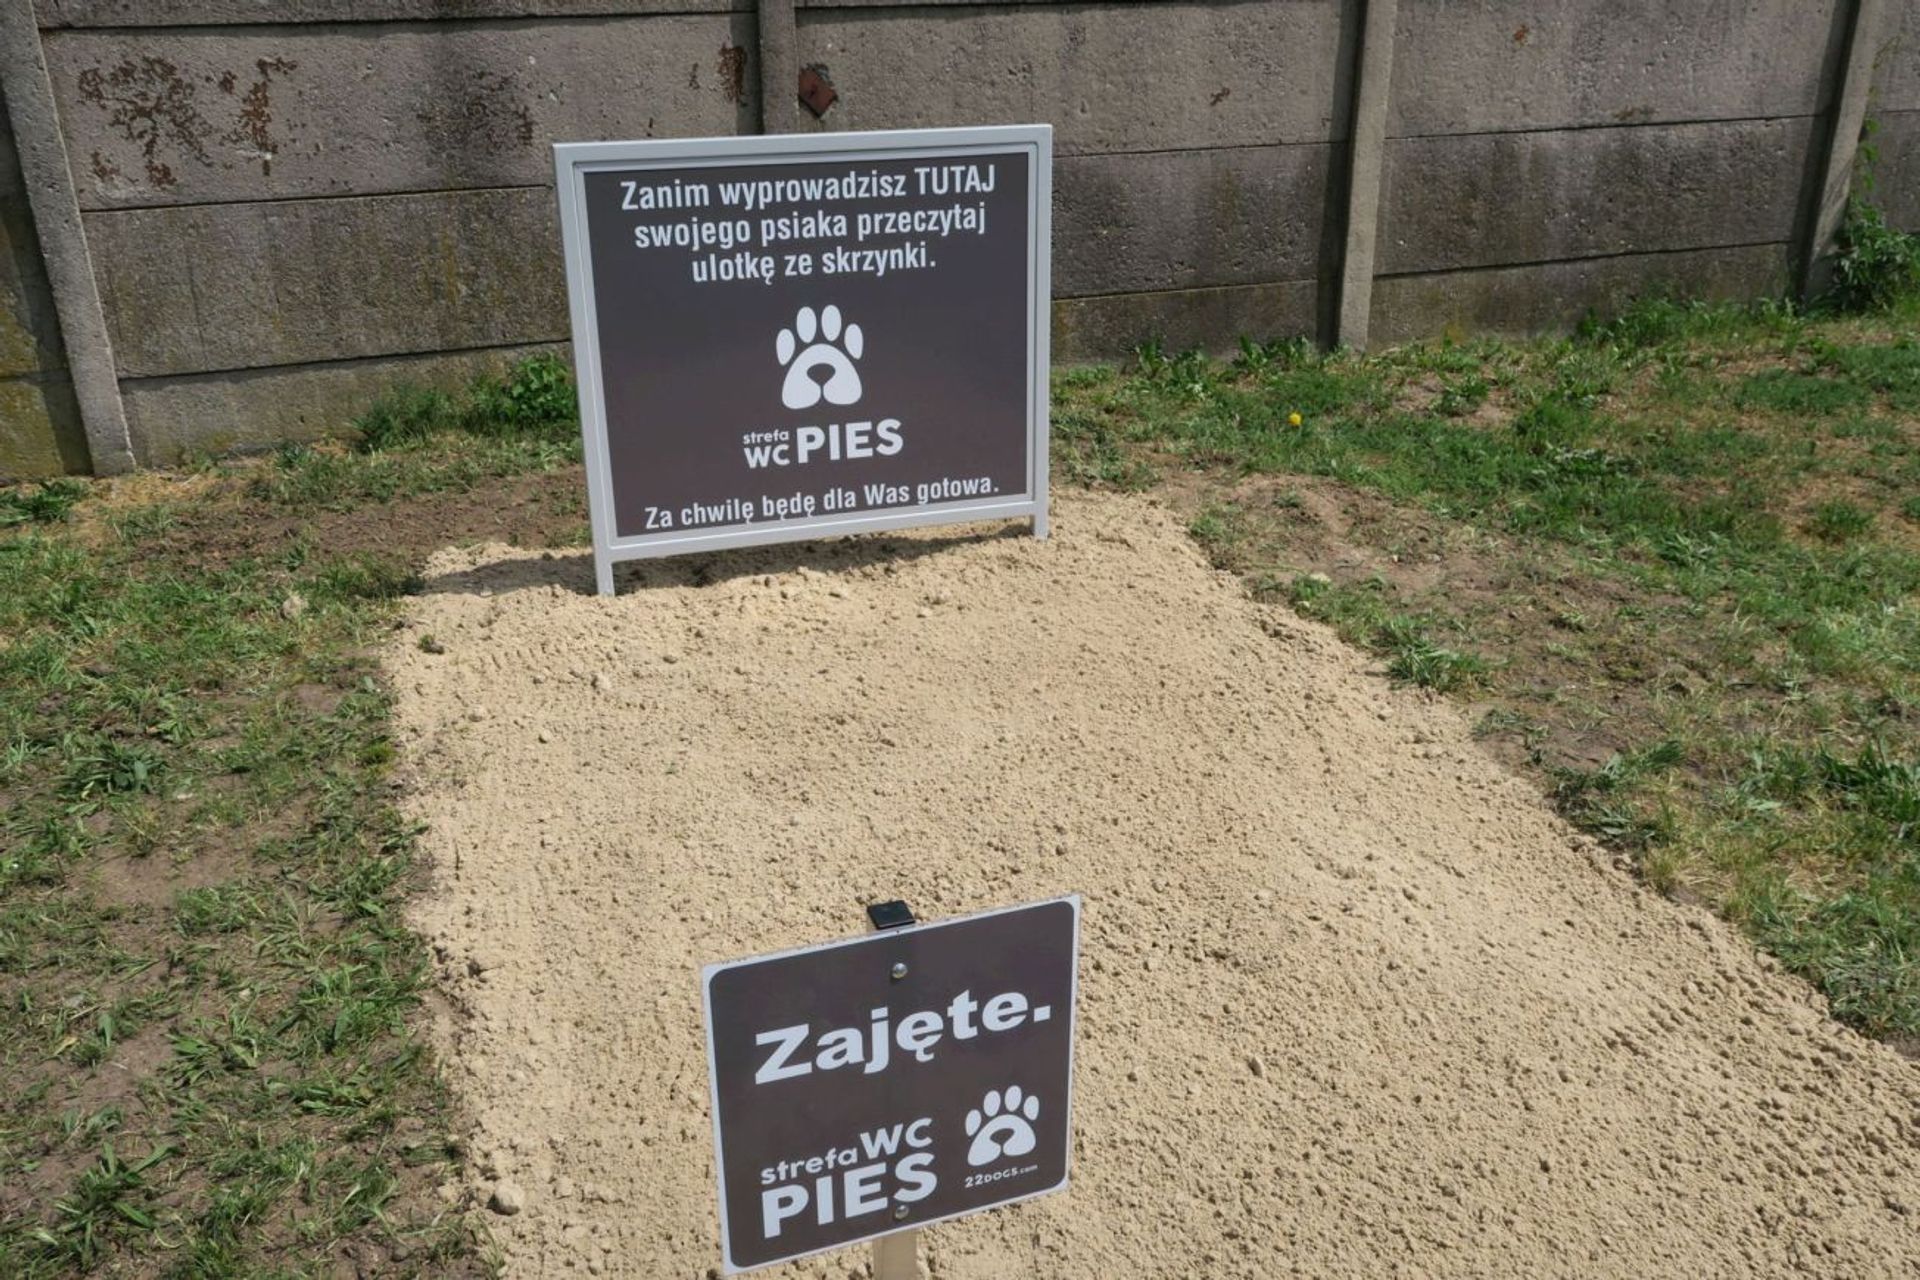  Pierwsza Strefa WC Pies powstała Koźminie Wielkopolskim